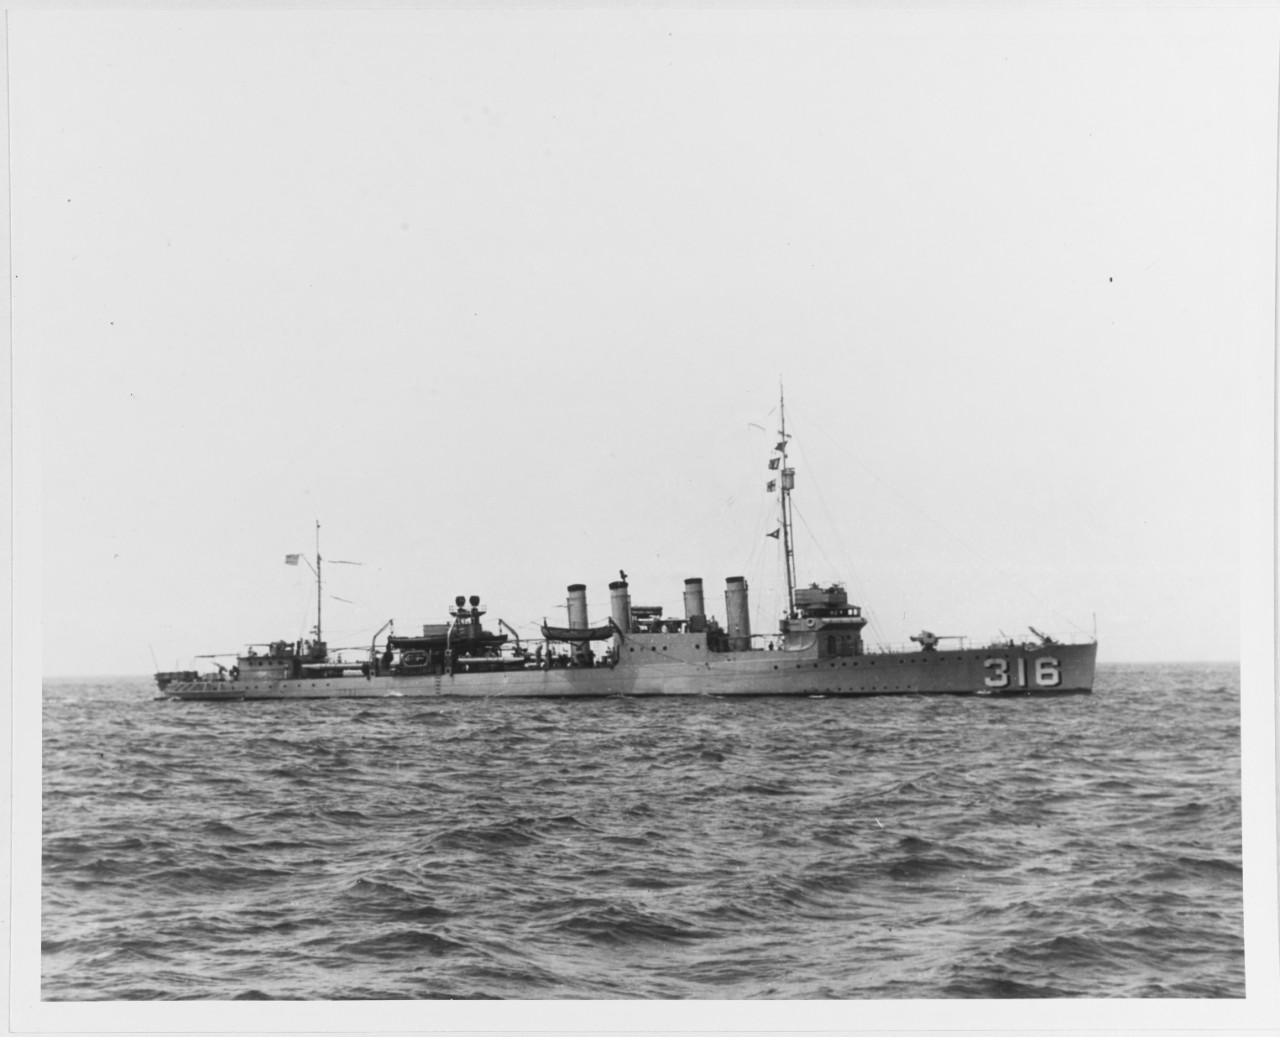 19-N-11040  USS Sloat